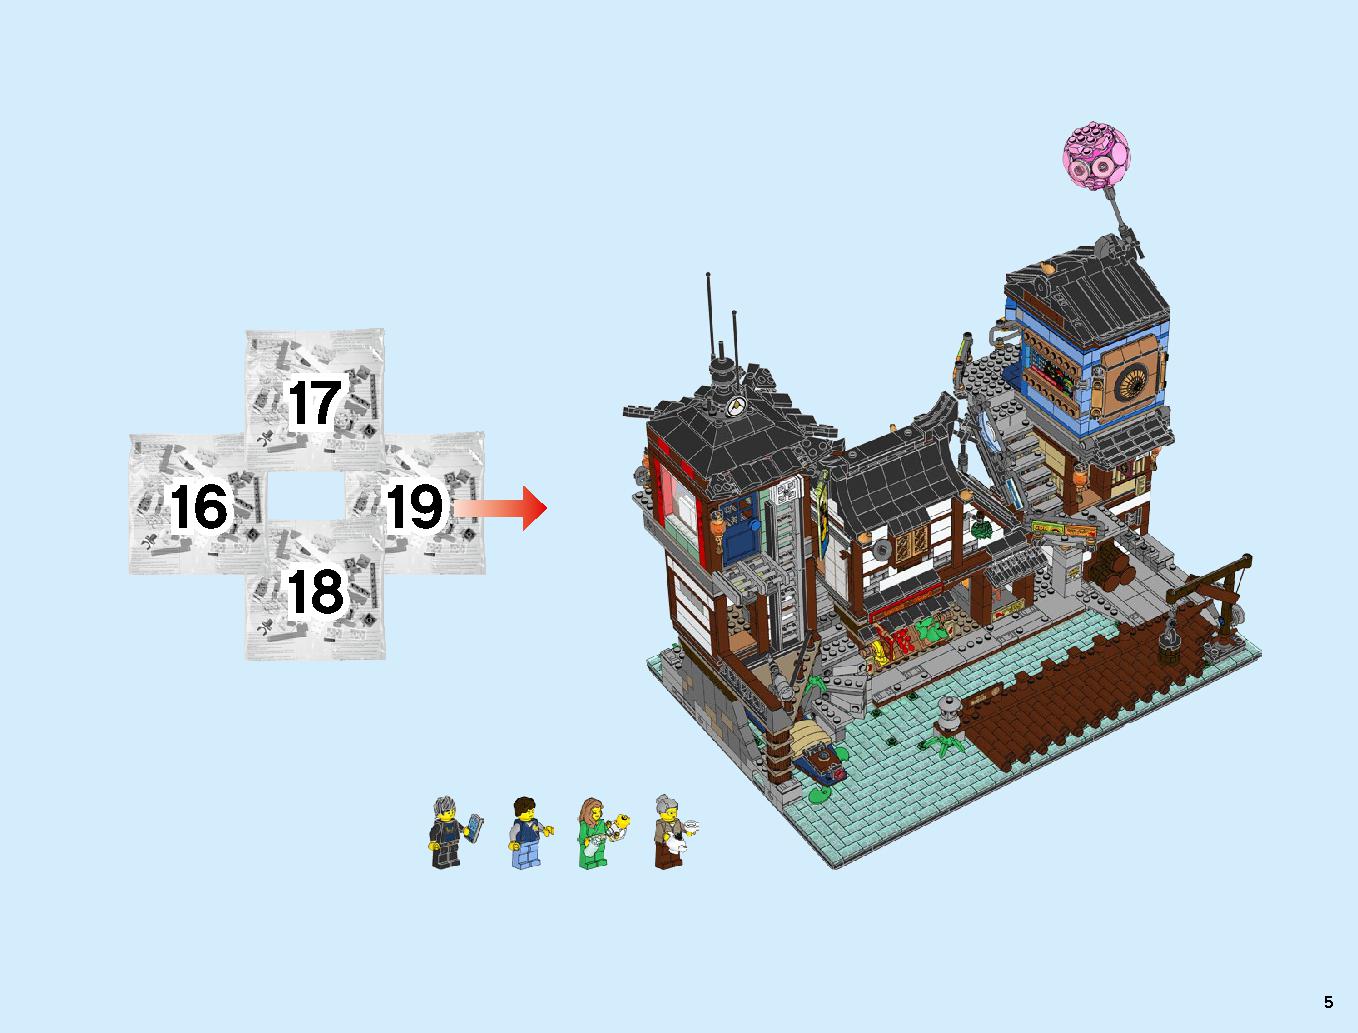 ニンジャゴーシティ・ポートパーク 70657 レゴの商品情報 レゴの説明書・組立方法 5 page